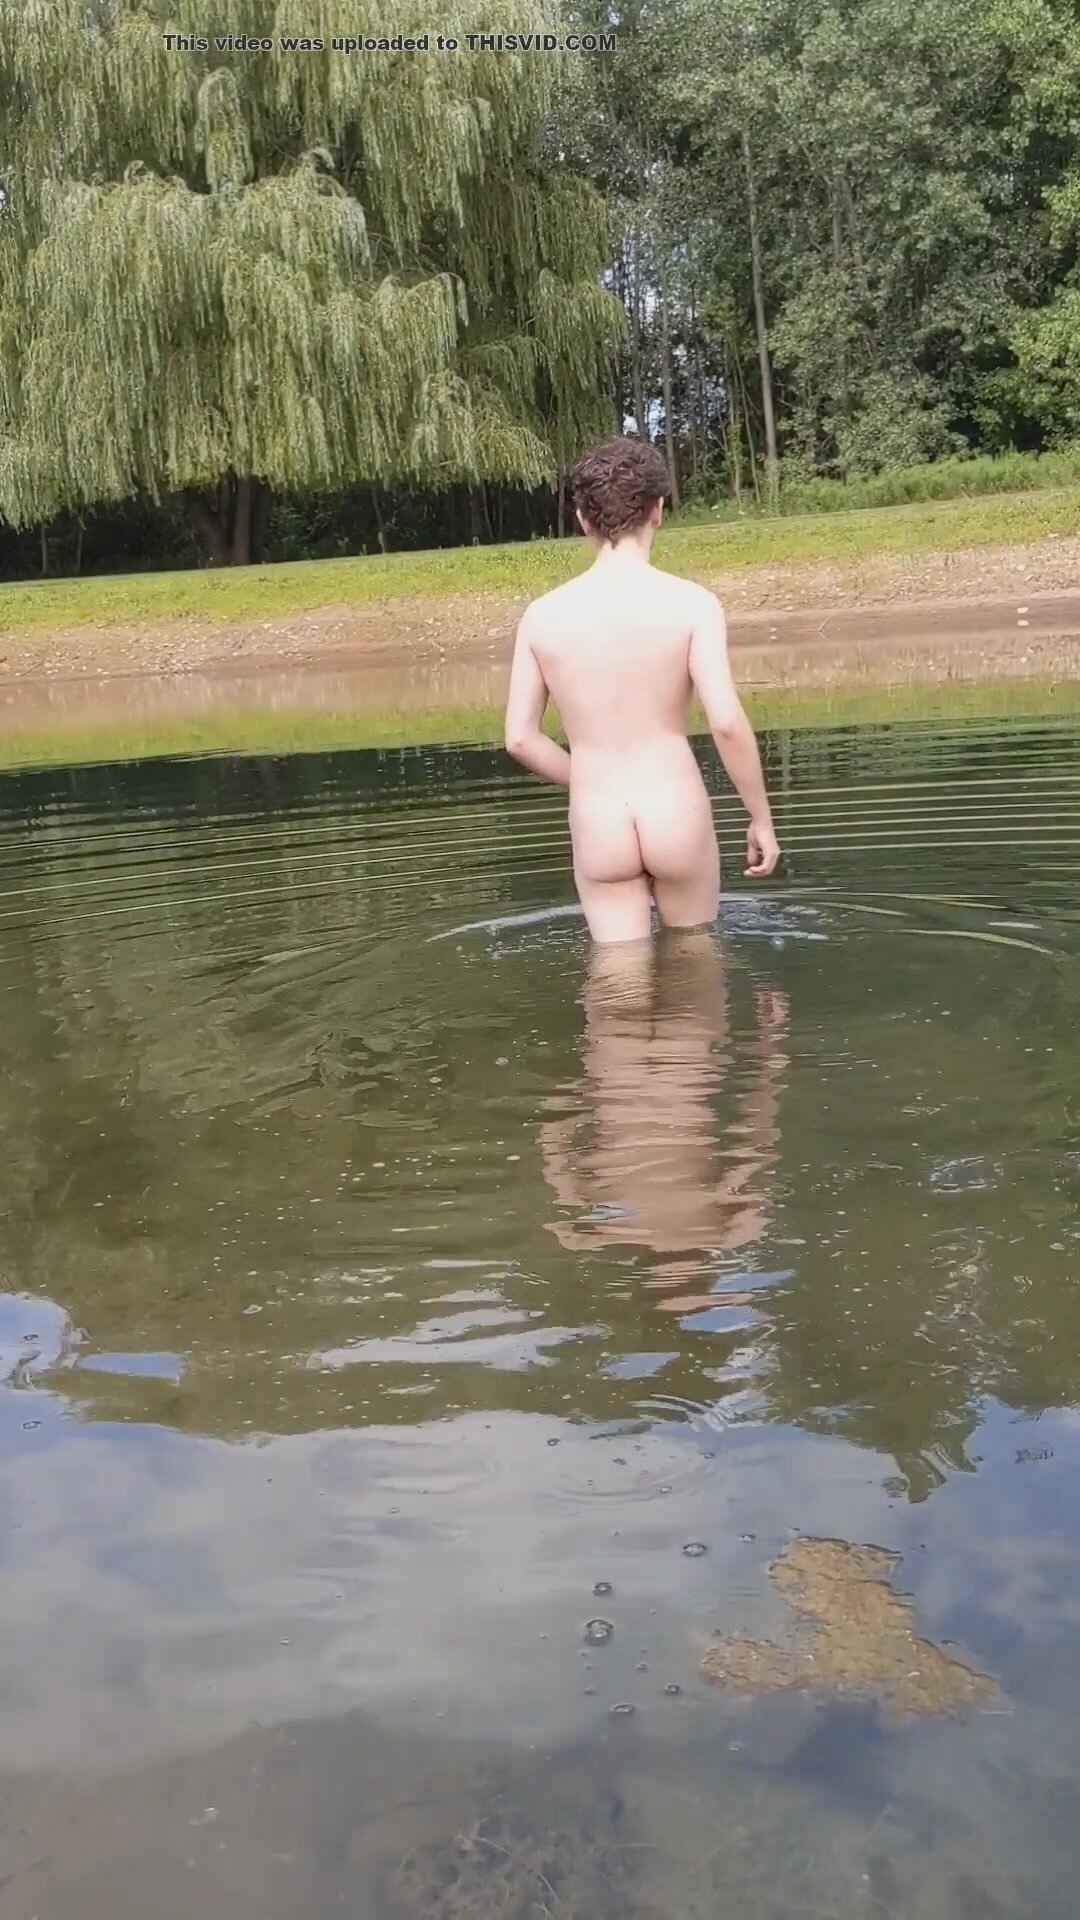 anthony ledwidge share nude boys skinny dipping photos